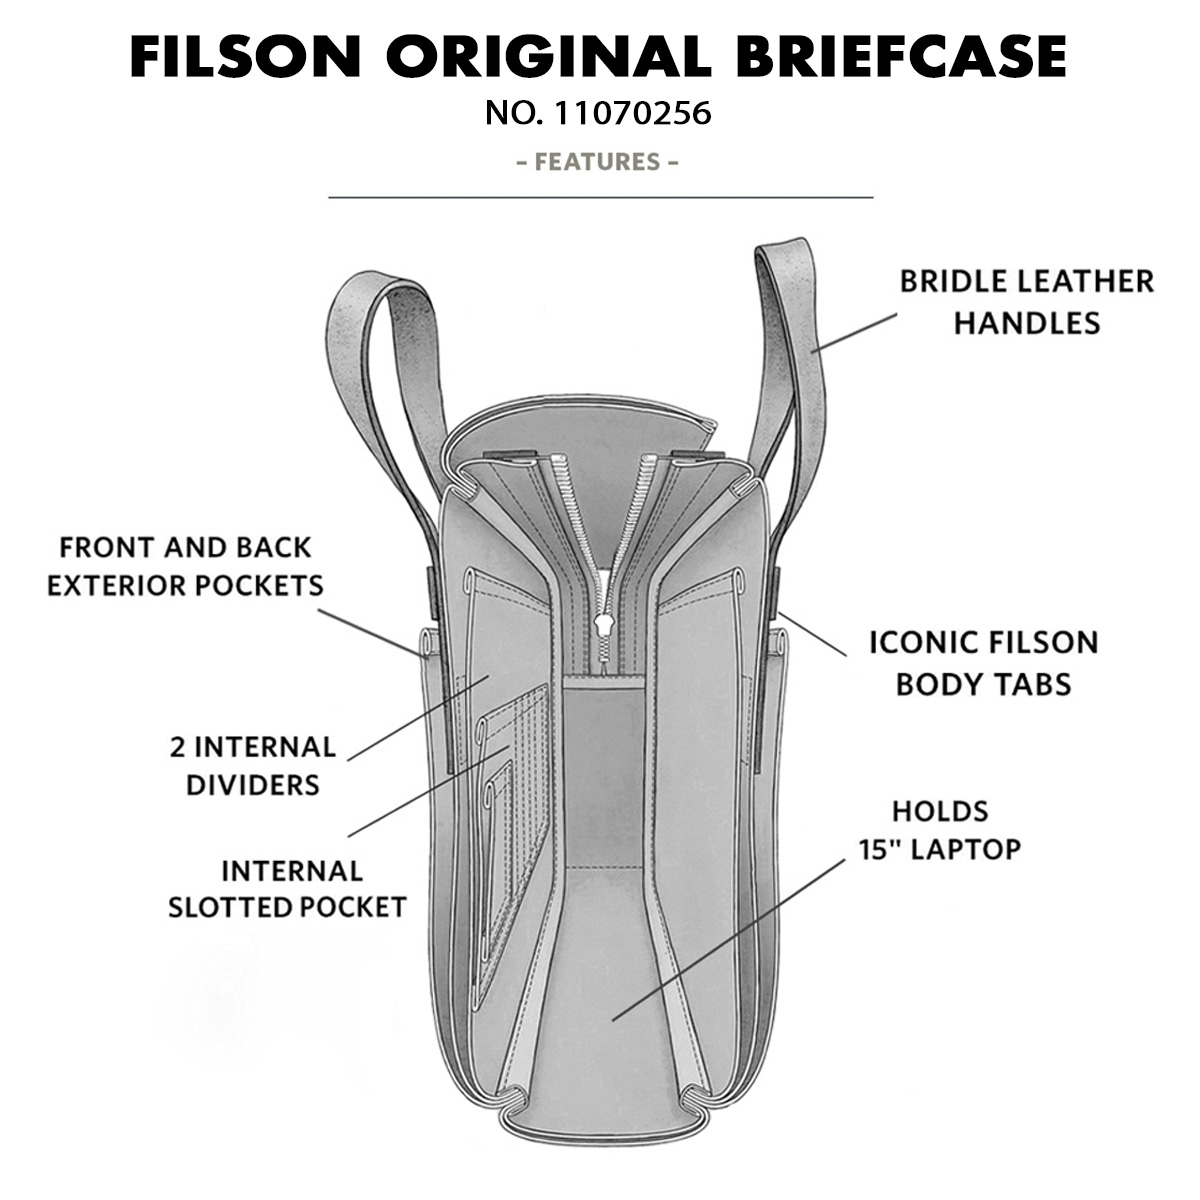 Filson Original Briefcase 11070256 Otter Green, features